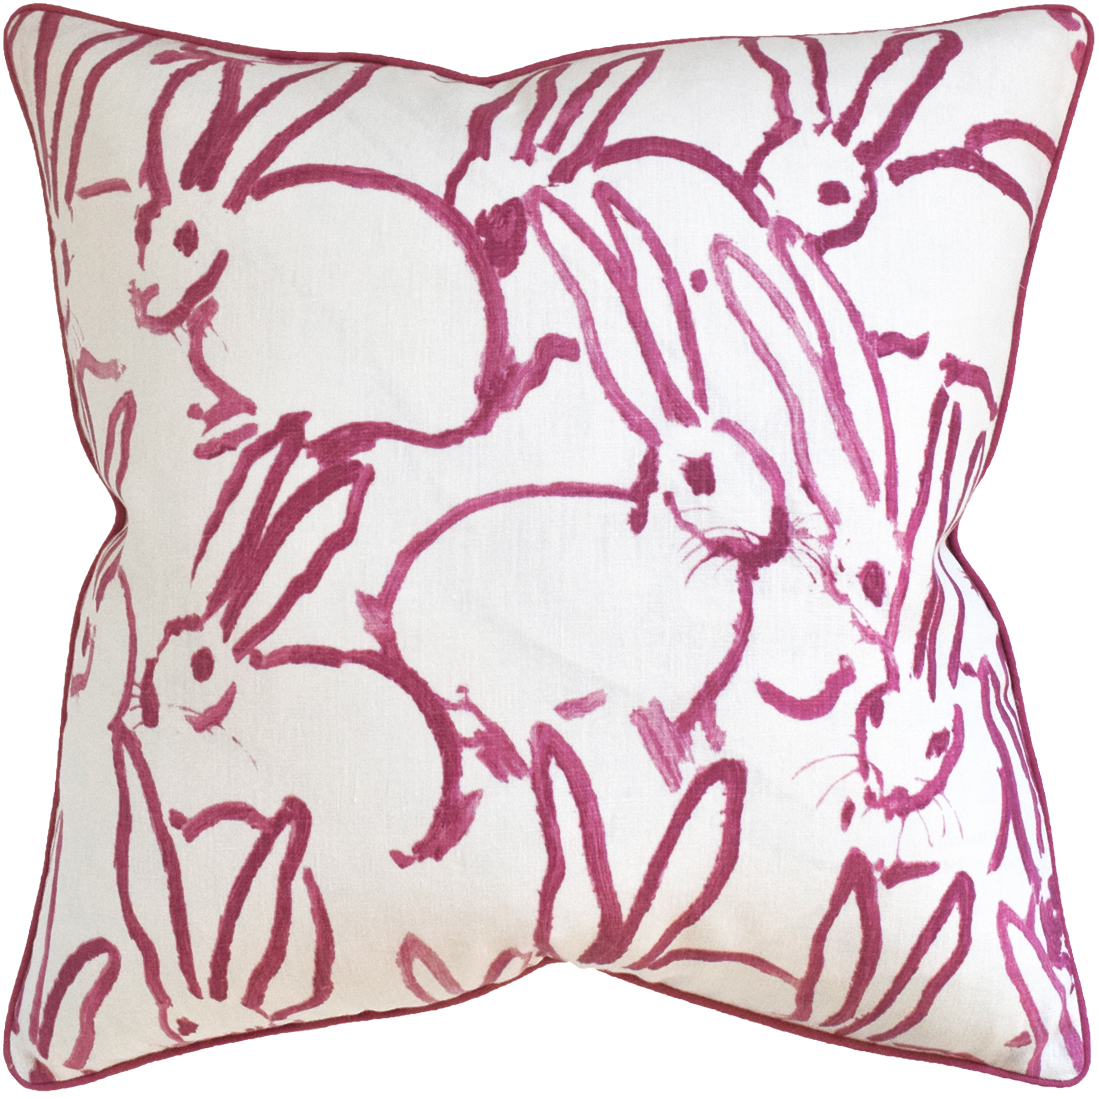 Bunnies Pink Pillows-$298.00